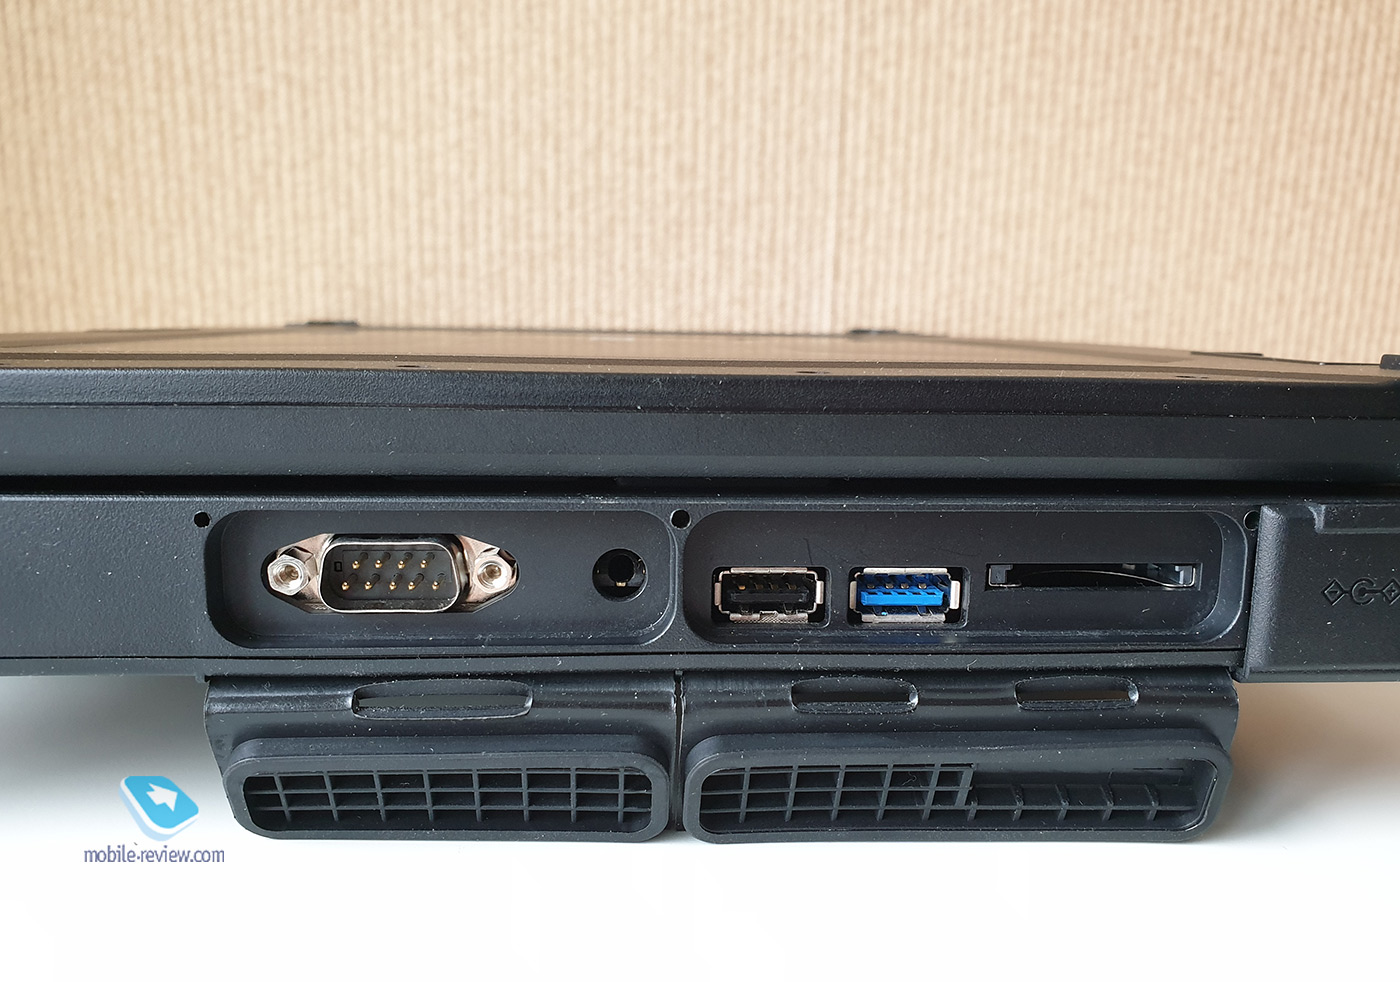 Защищенный ноутбук Acer ENDURO N7: чтобы работа спорилась